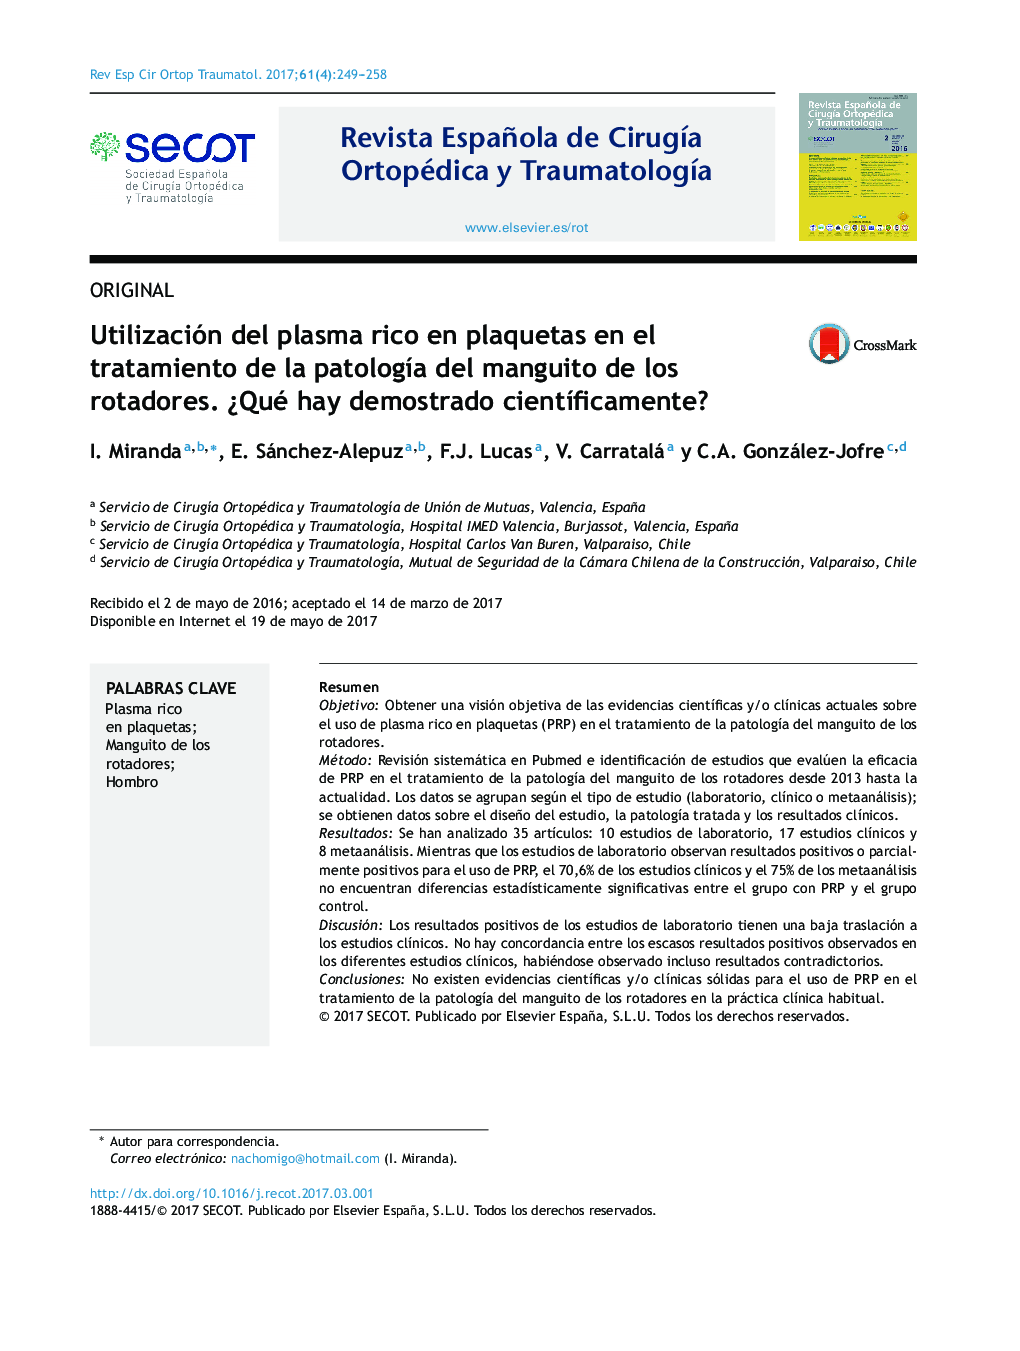 Utilización del plasma rico en plaquetas en el tratamiento de la patologÃ­a del manguito de los rotadores. Â¿Qué hay demostrado cientÃ­ficamente?